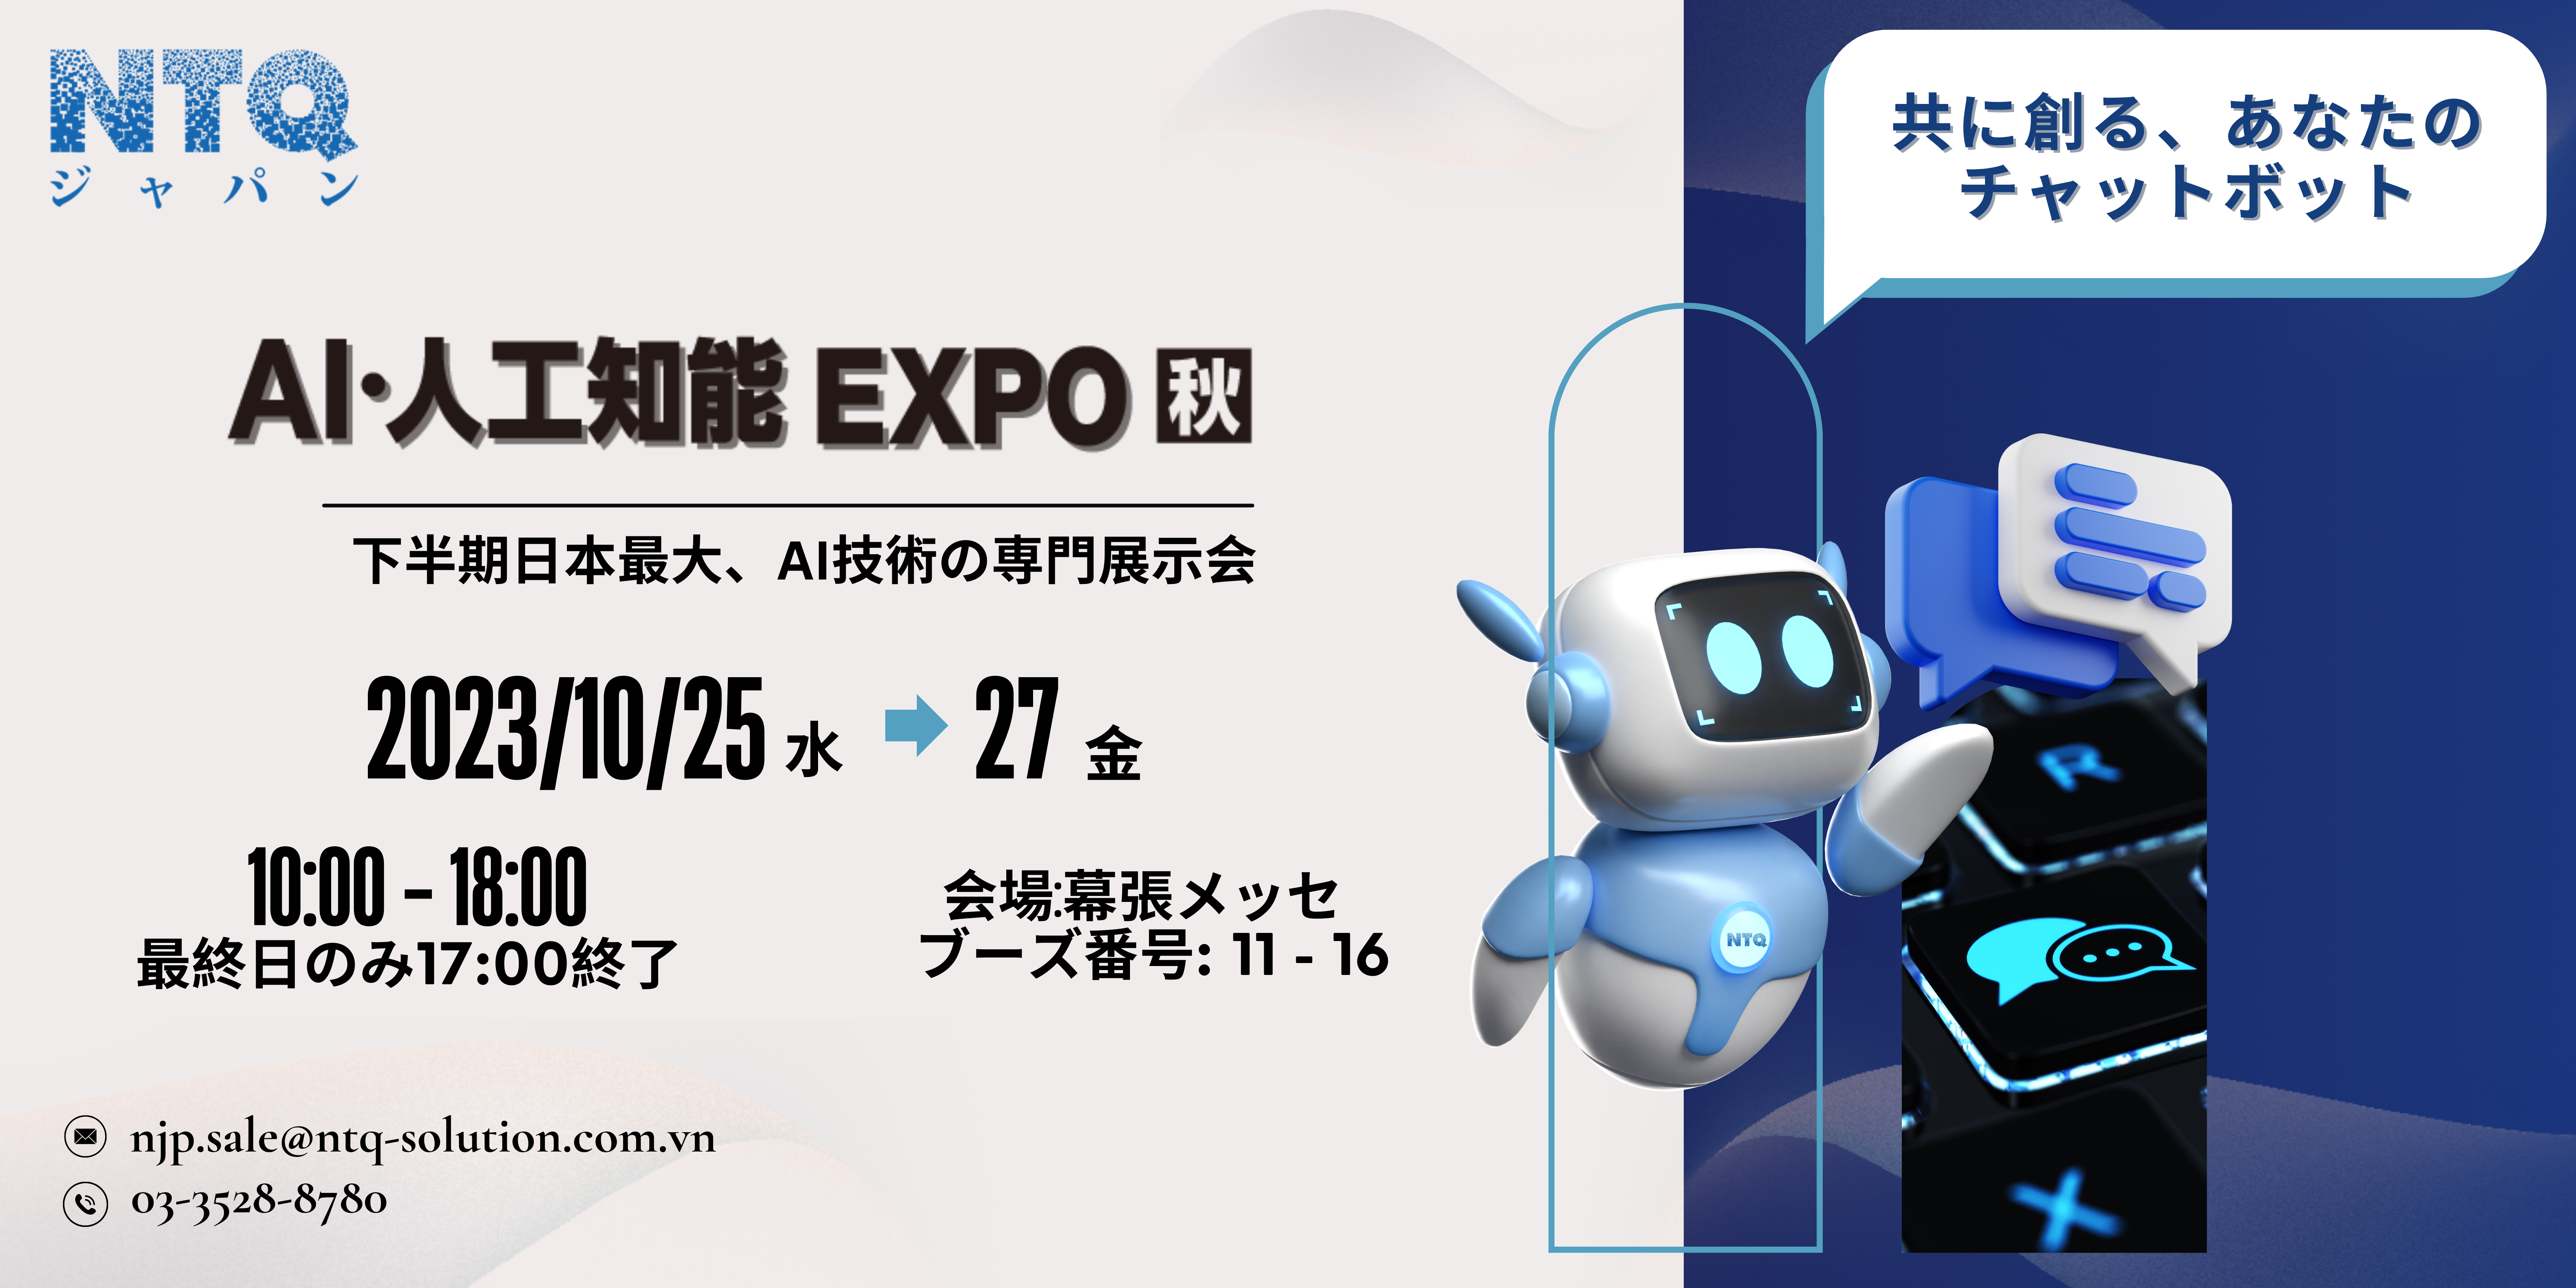 第4回AI・人工知能 Expo【秋】への出展のお知らせ